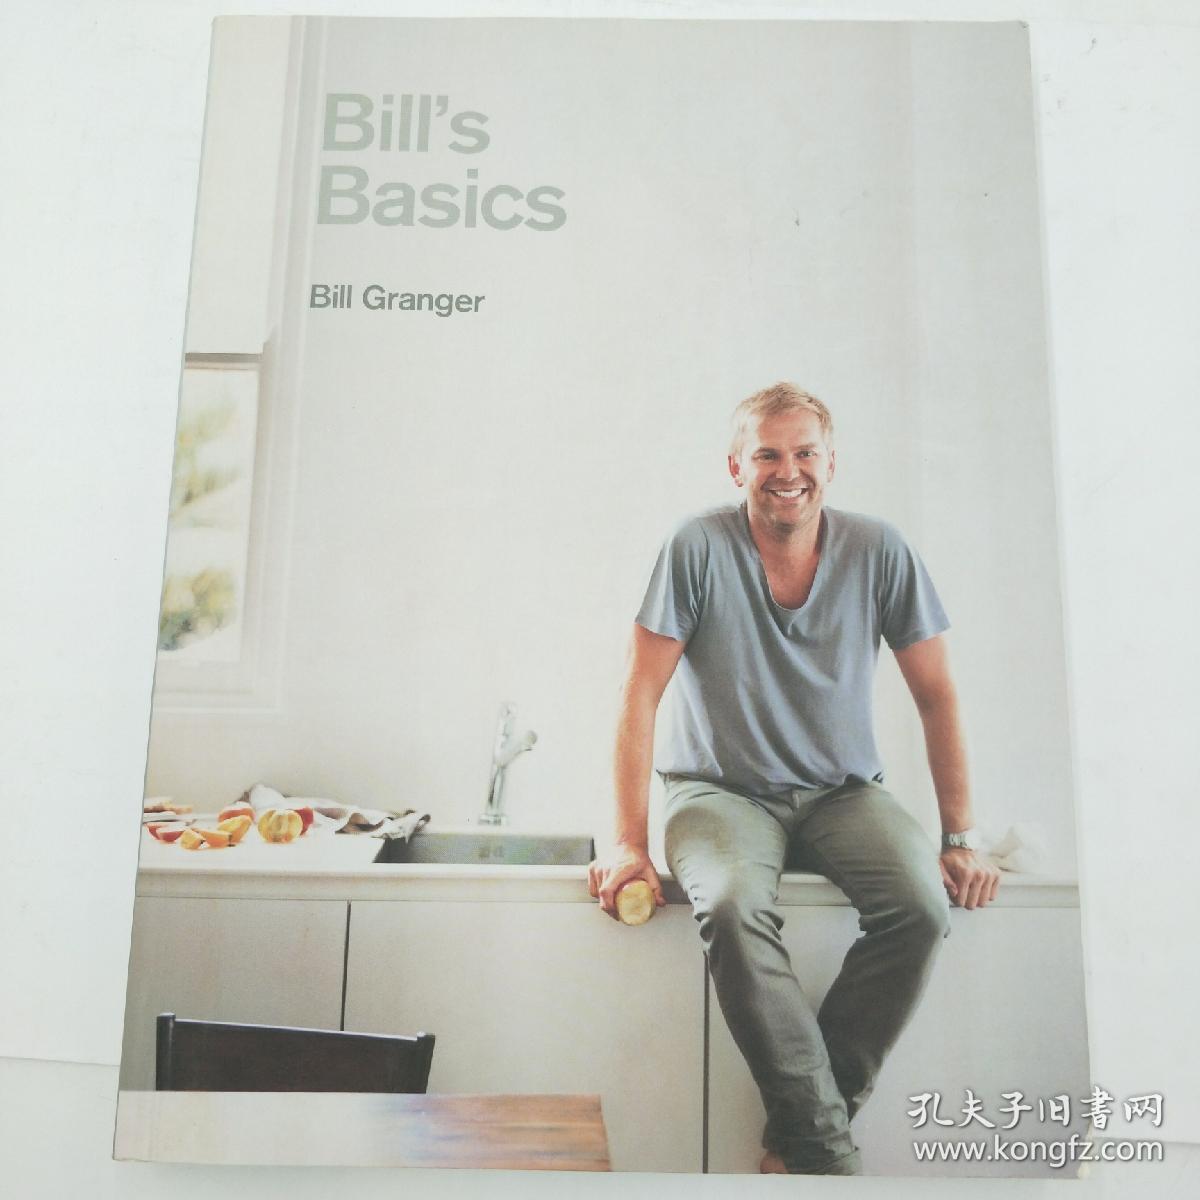 Bill's Basics